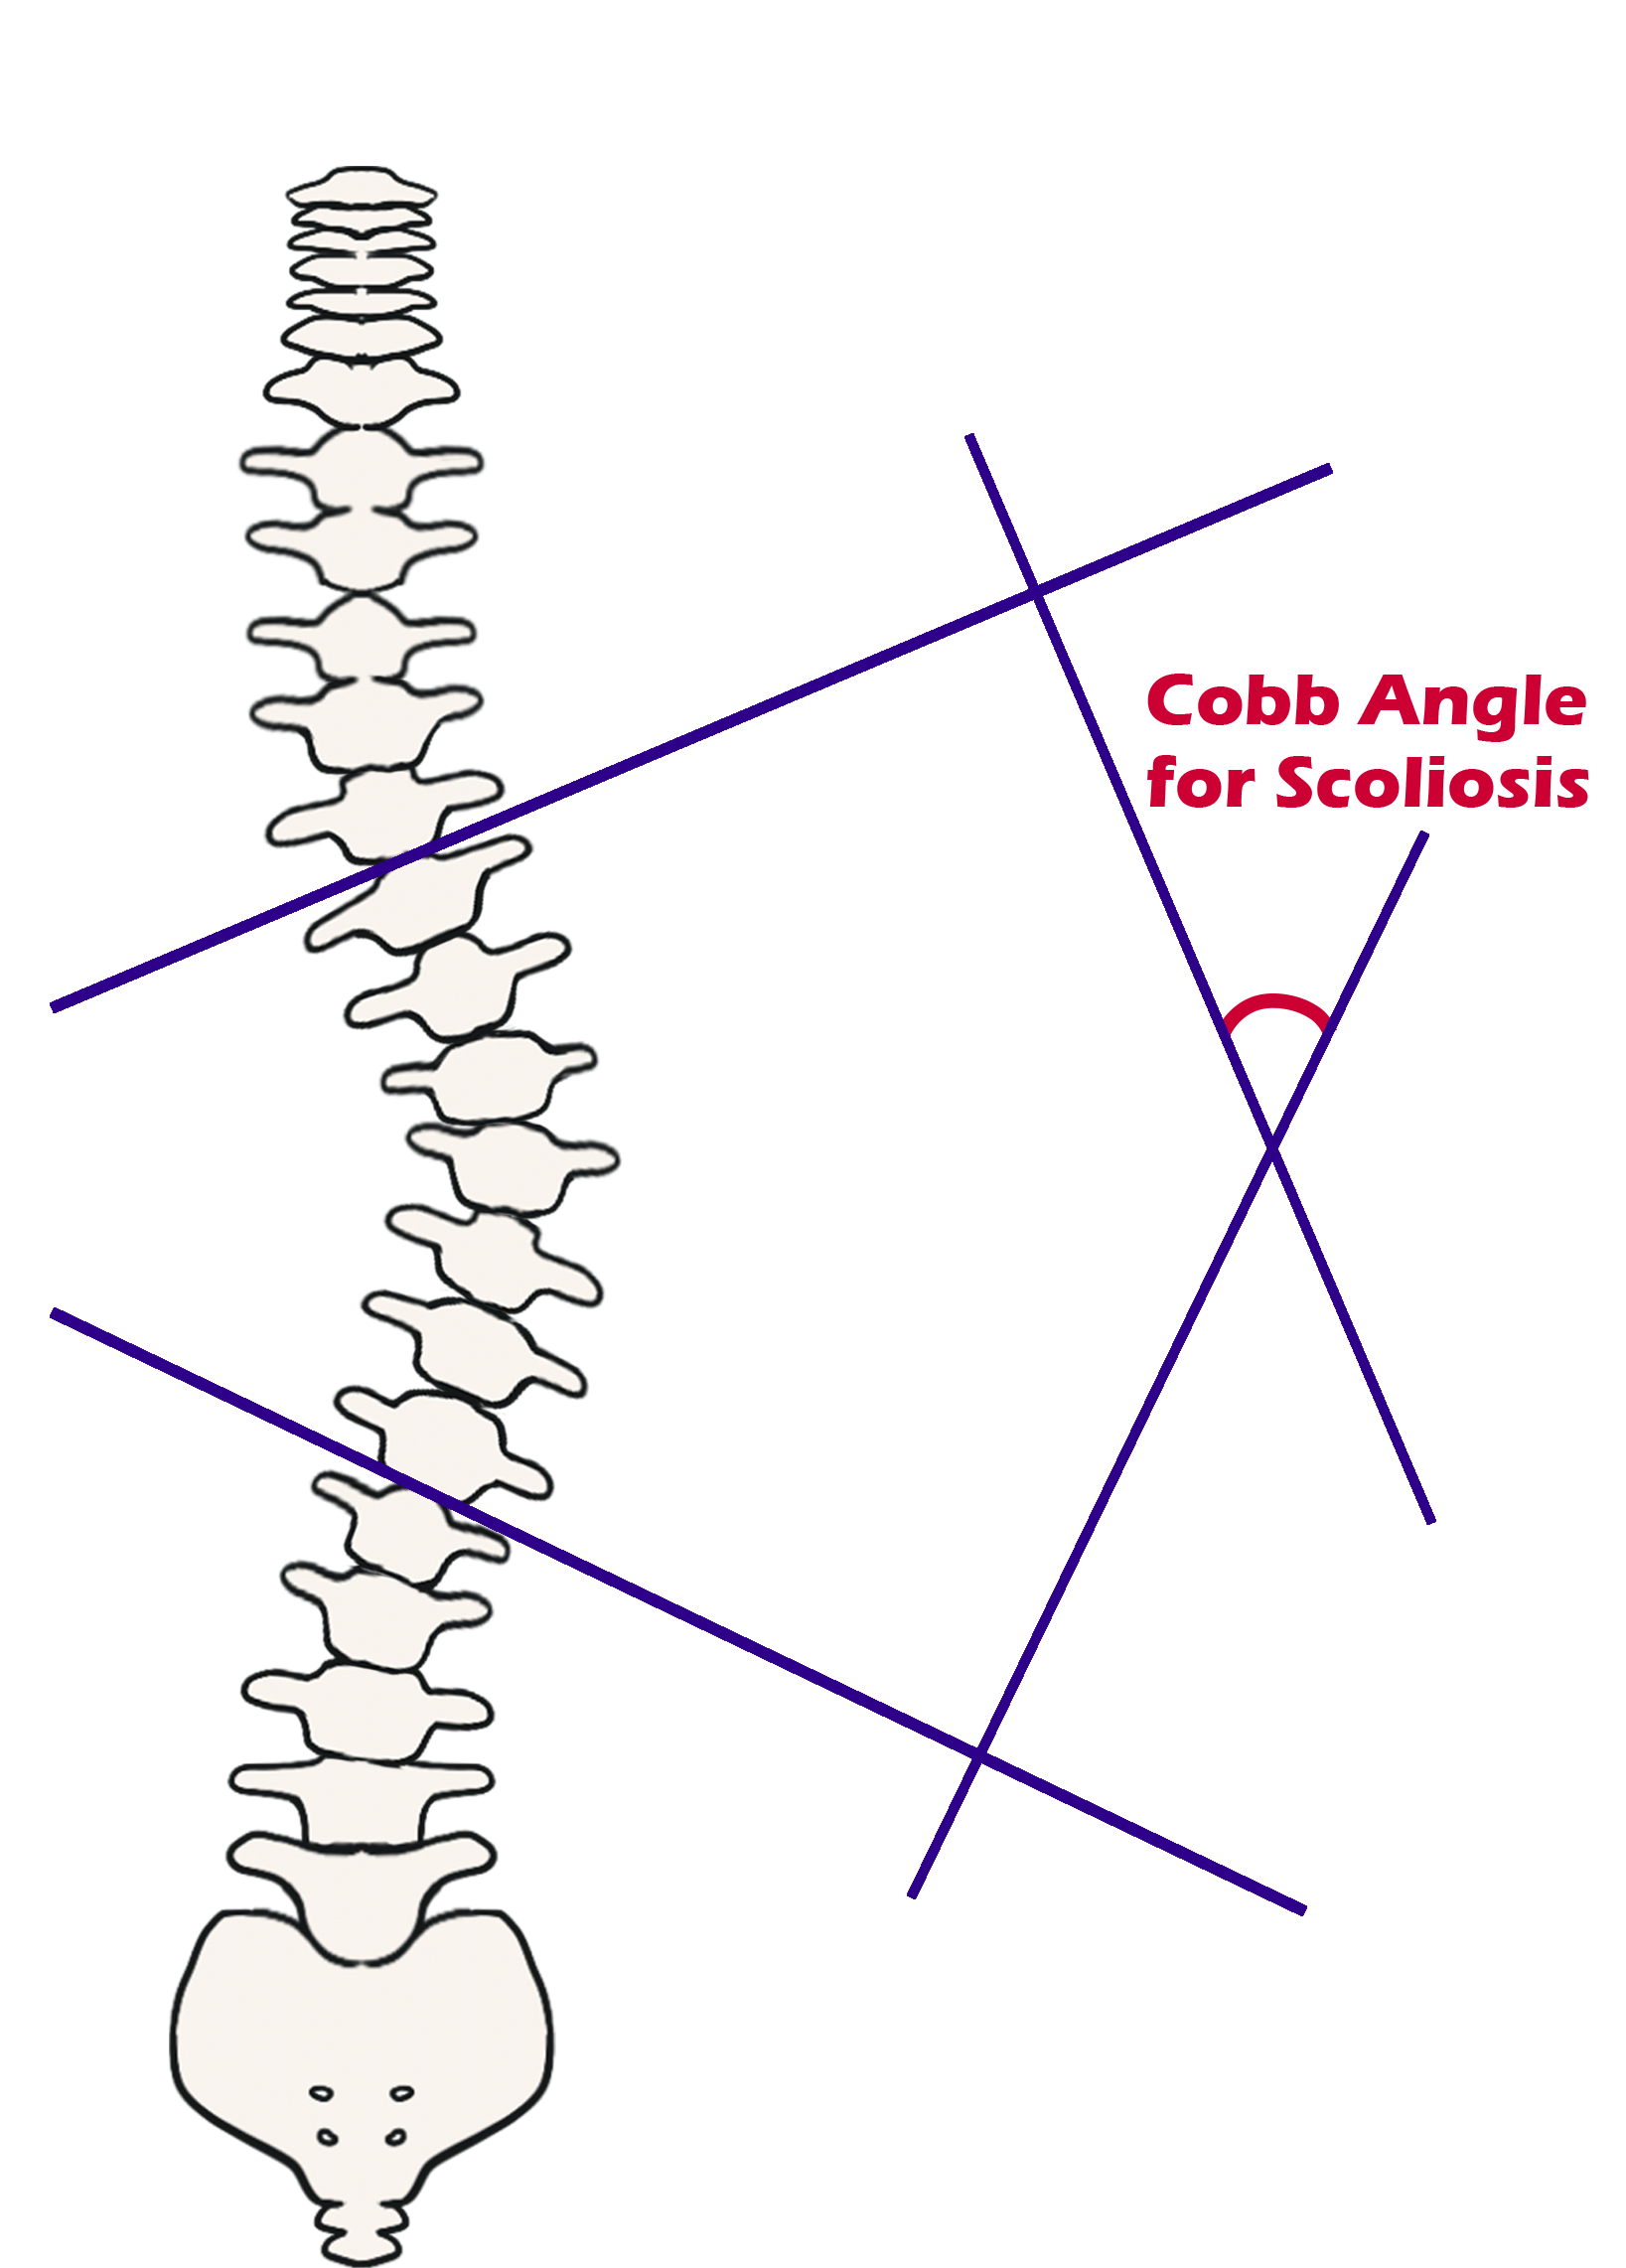 Cobb Angle